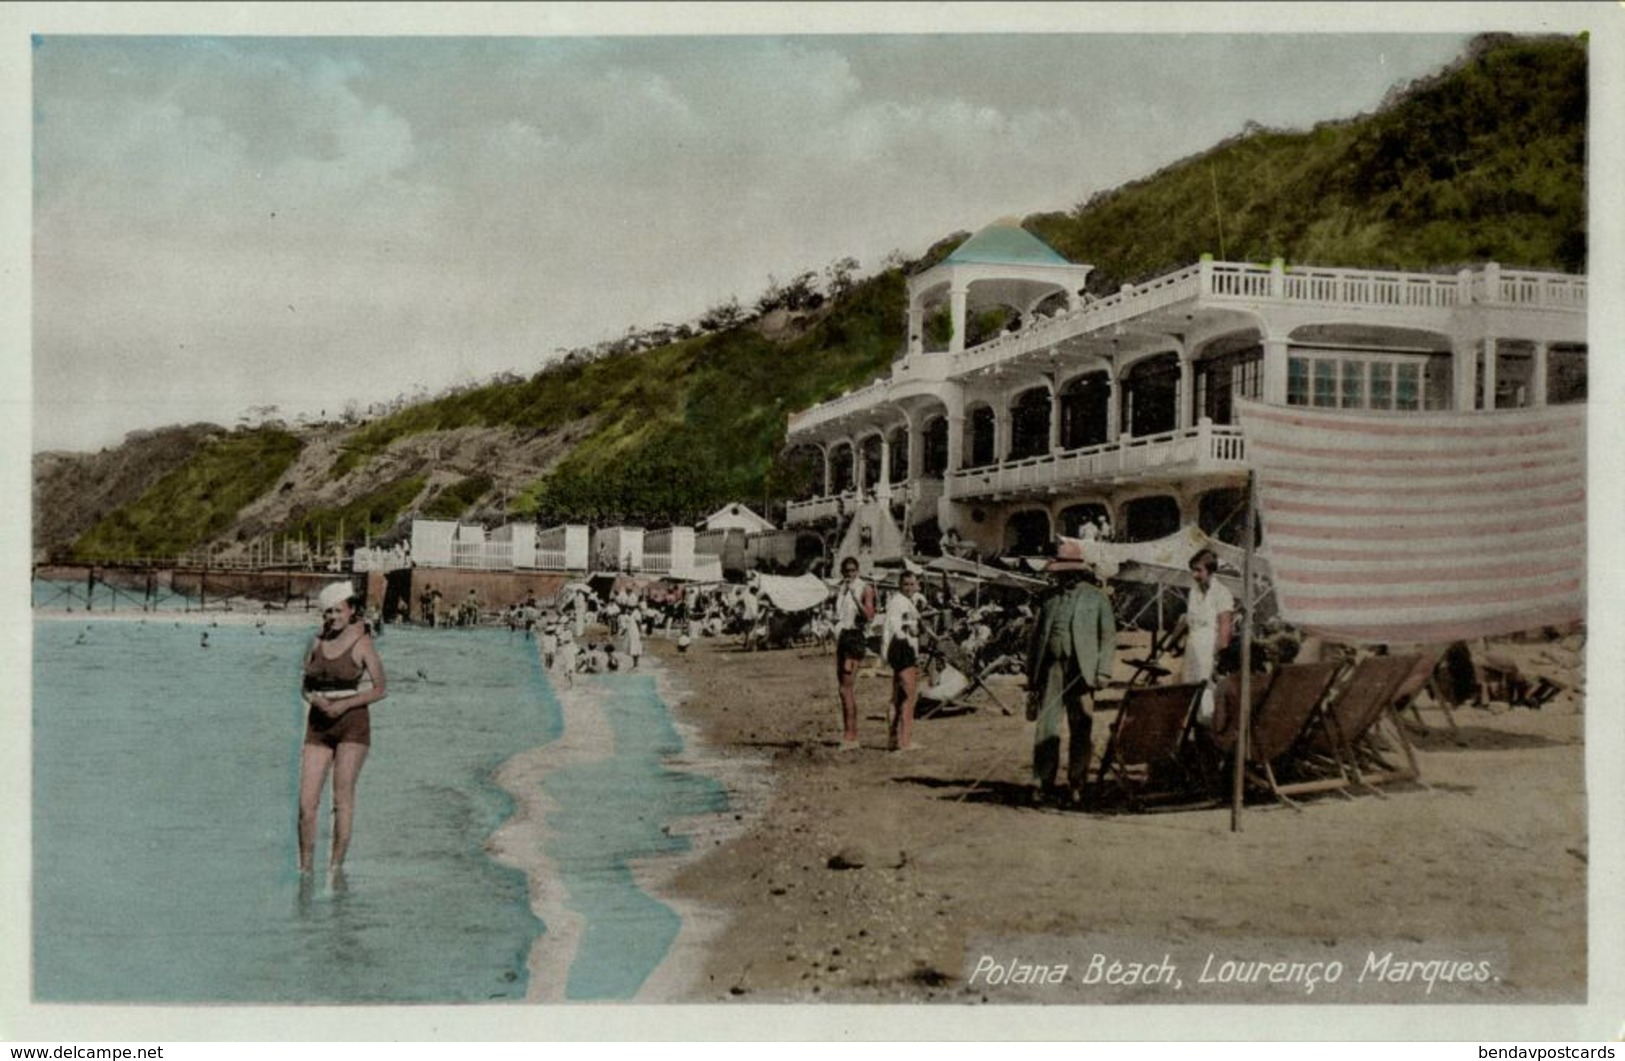 Mozambique, LOURENÇO MARQUES, Polona Beach, Bathing Suit (1930s) Postcard - Mozambique